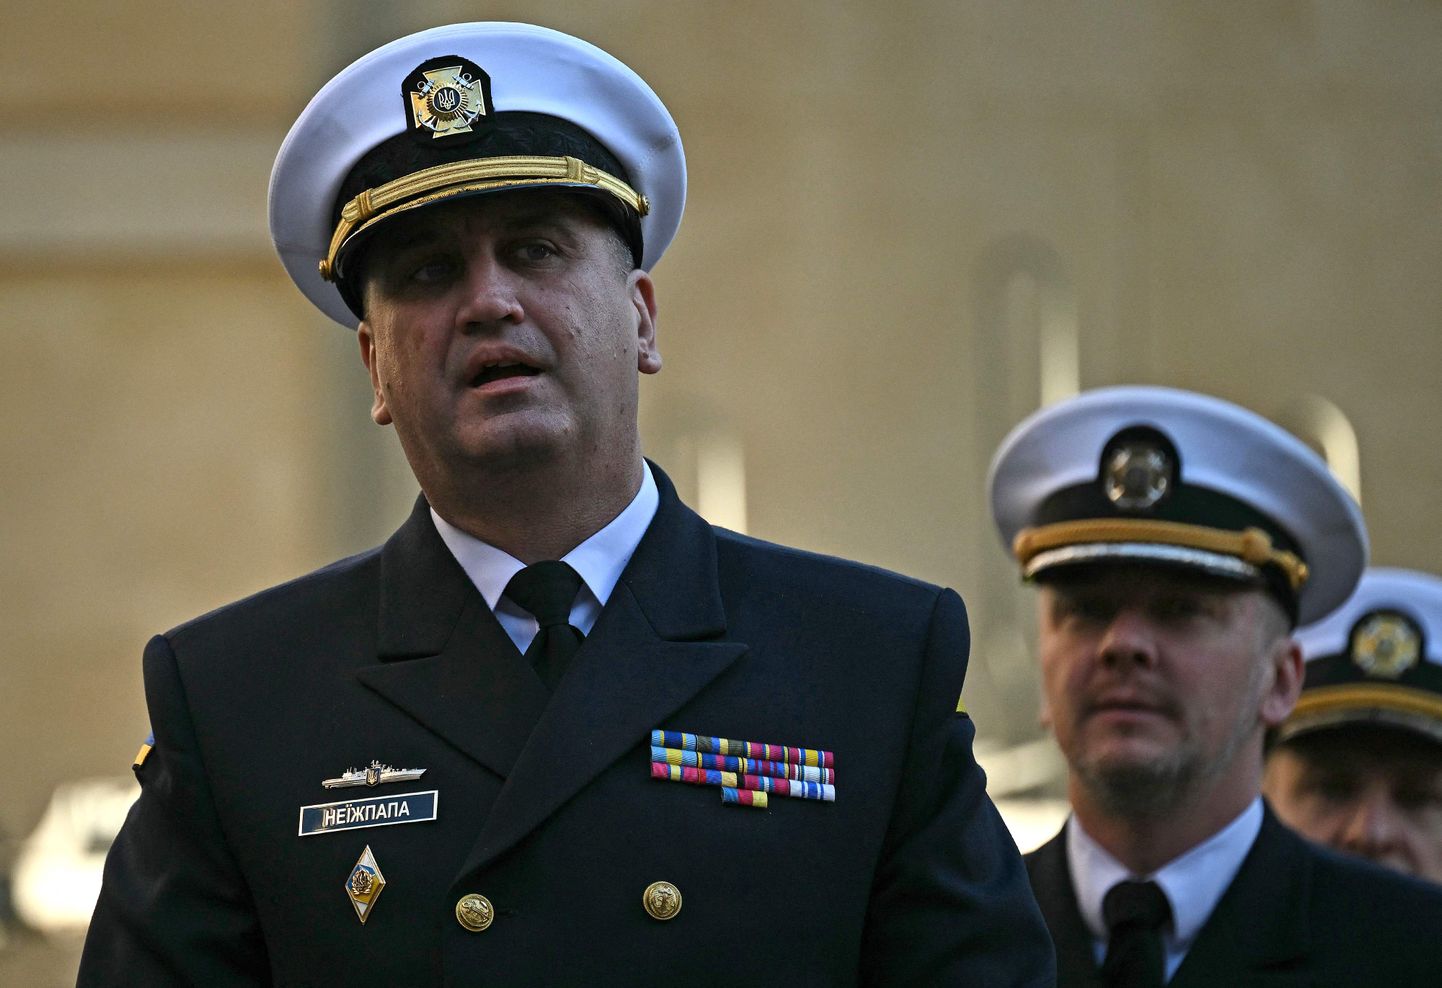 Ukraina mereväe ülem viitseadmiral Oleksi Neižpapa ametlikul kohtumisel Londonis möödunud aasta detsembris.